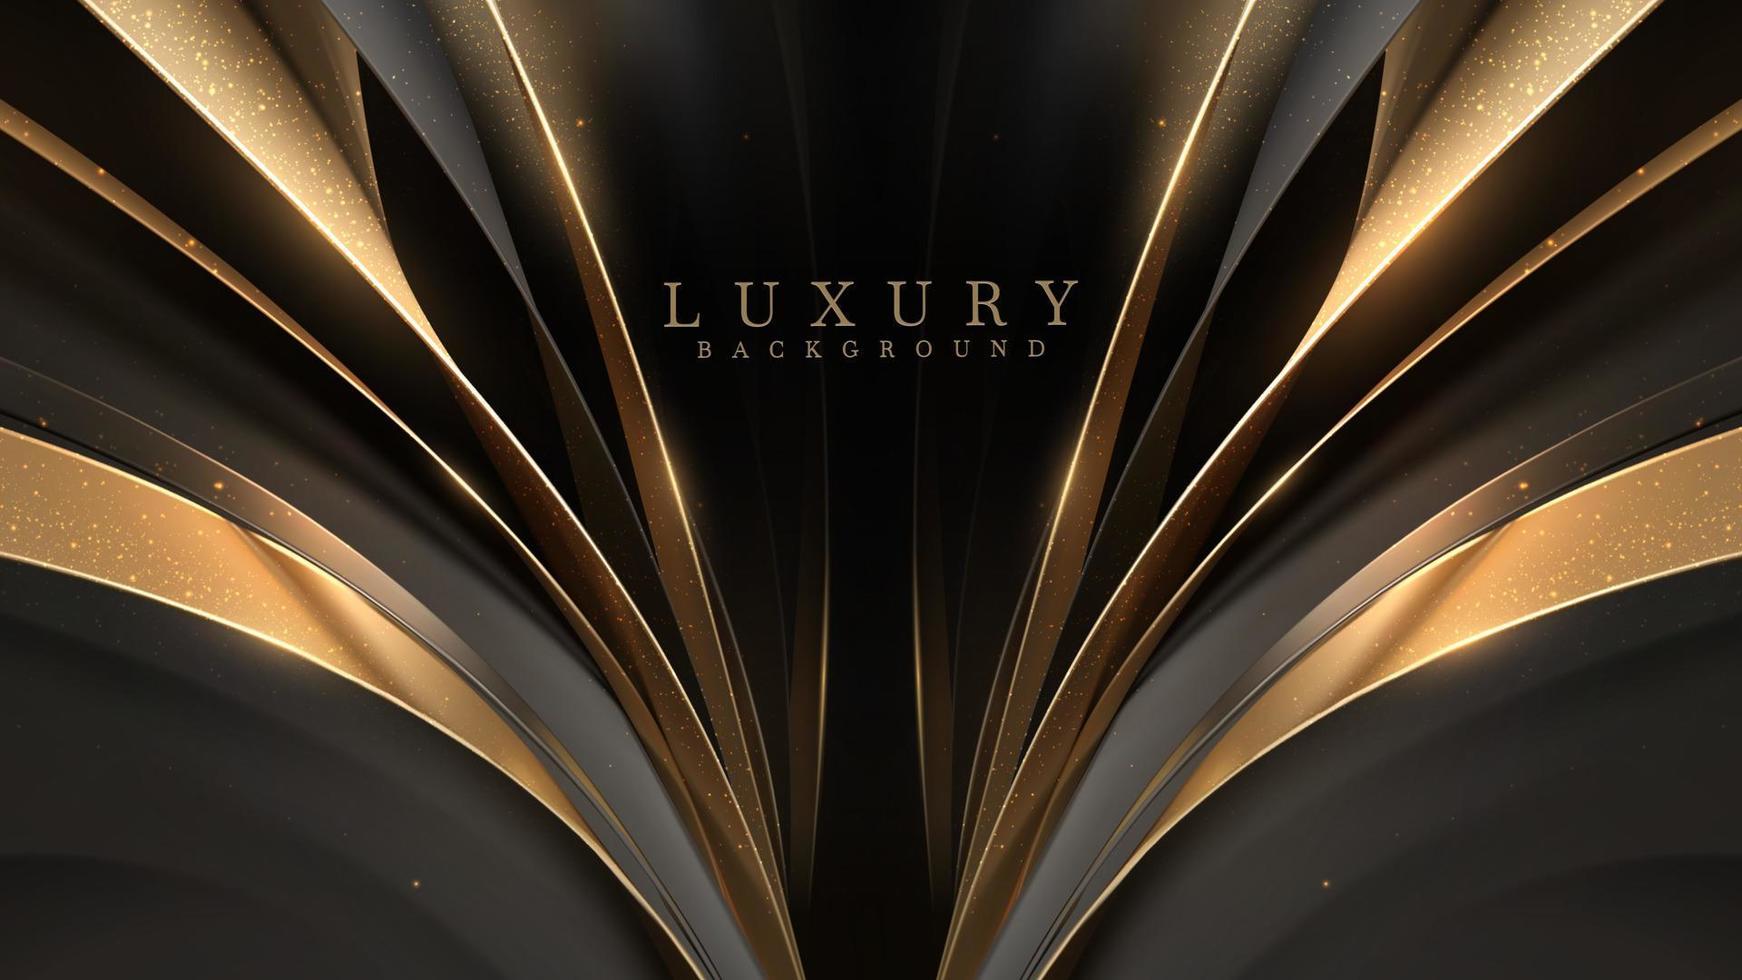 schwarzer luxushintergrund mit goldenen bandelementen und glitzernden lichteffektdekorationen und sternen. realistisches Design im 3D-Stil. Vektor-Illustration. vektor